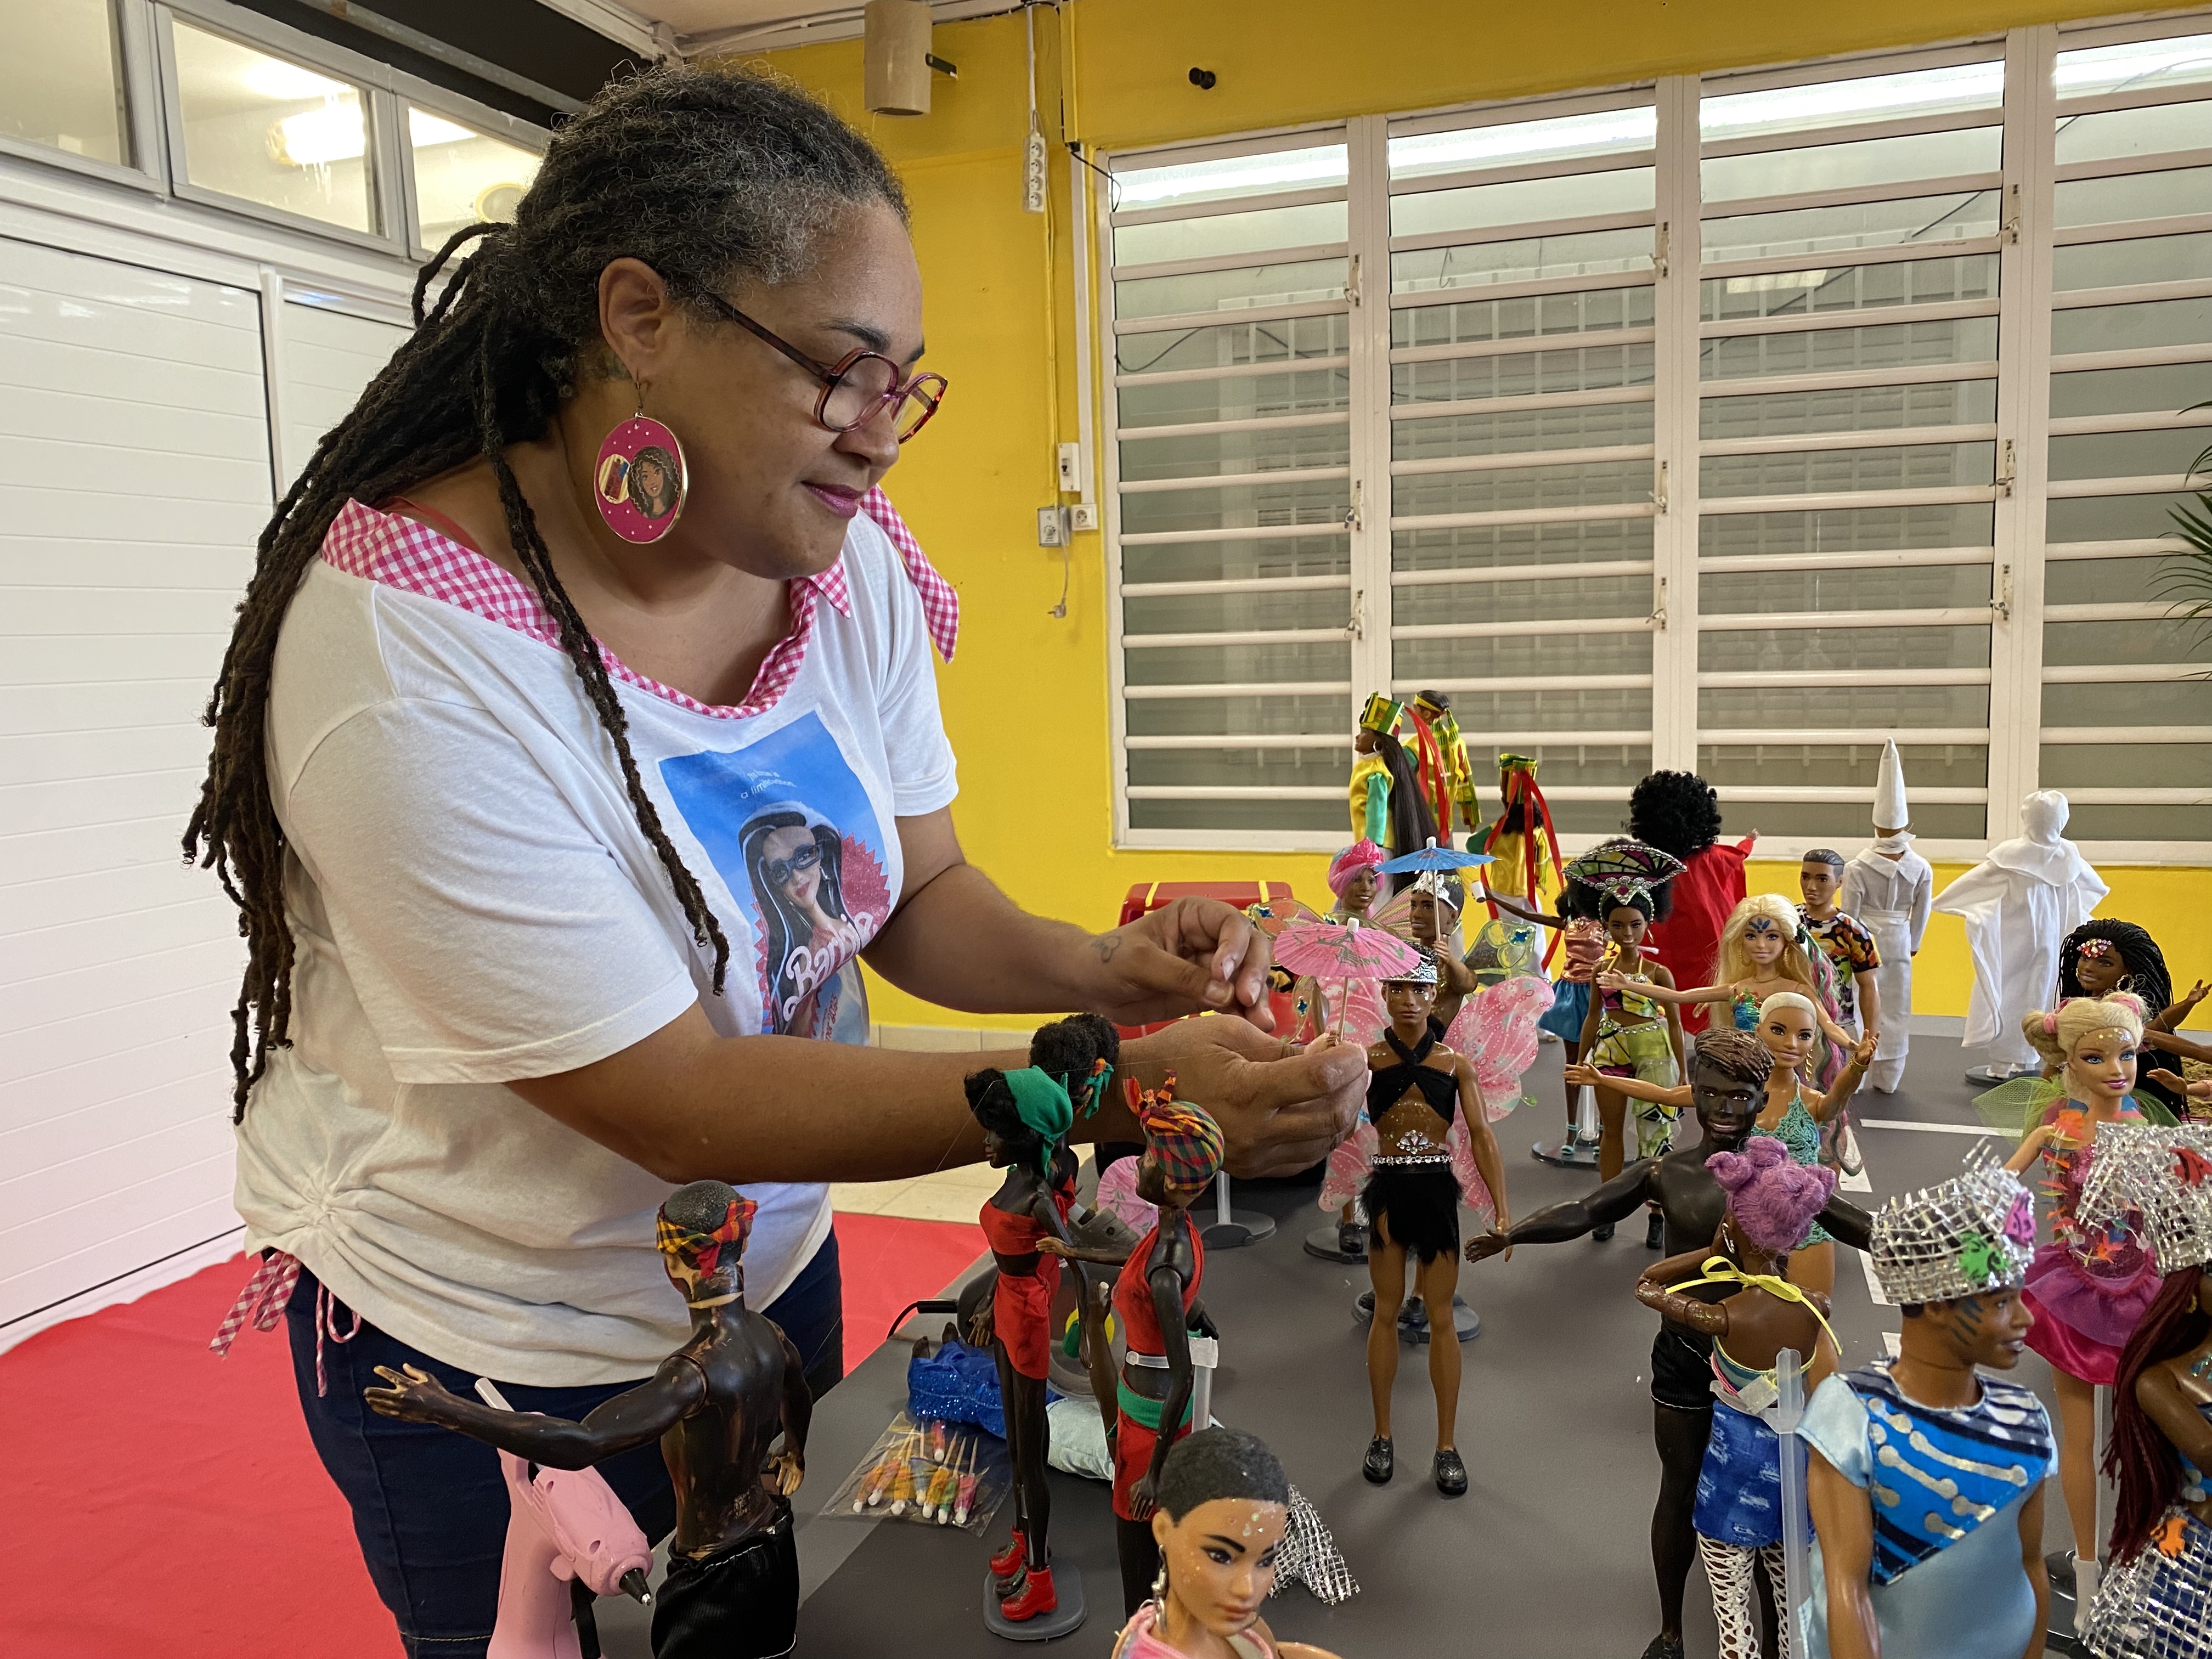     Popot Kannaval : des poupées Barbie relookées aux couleurs de Vaval

